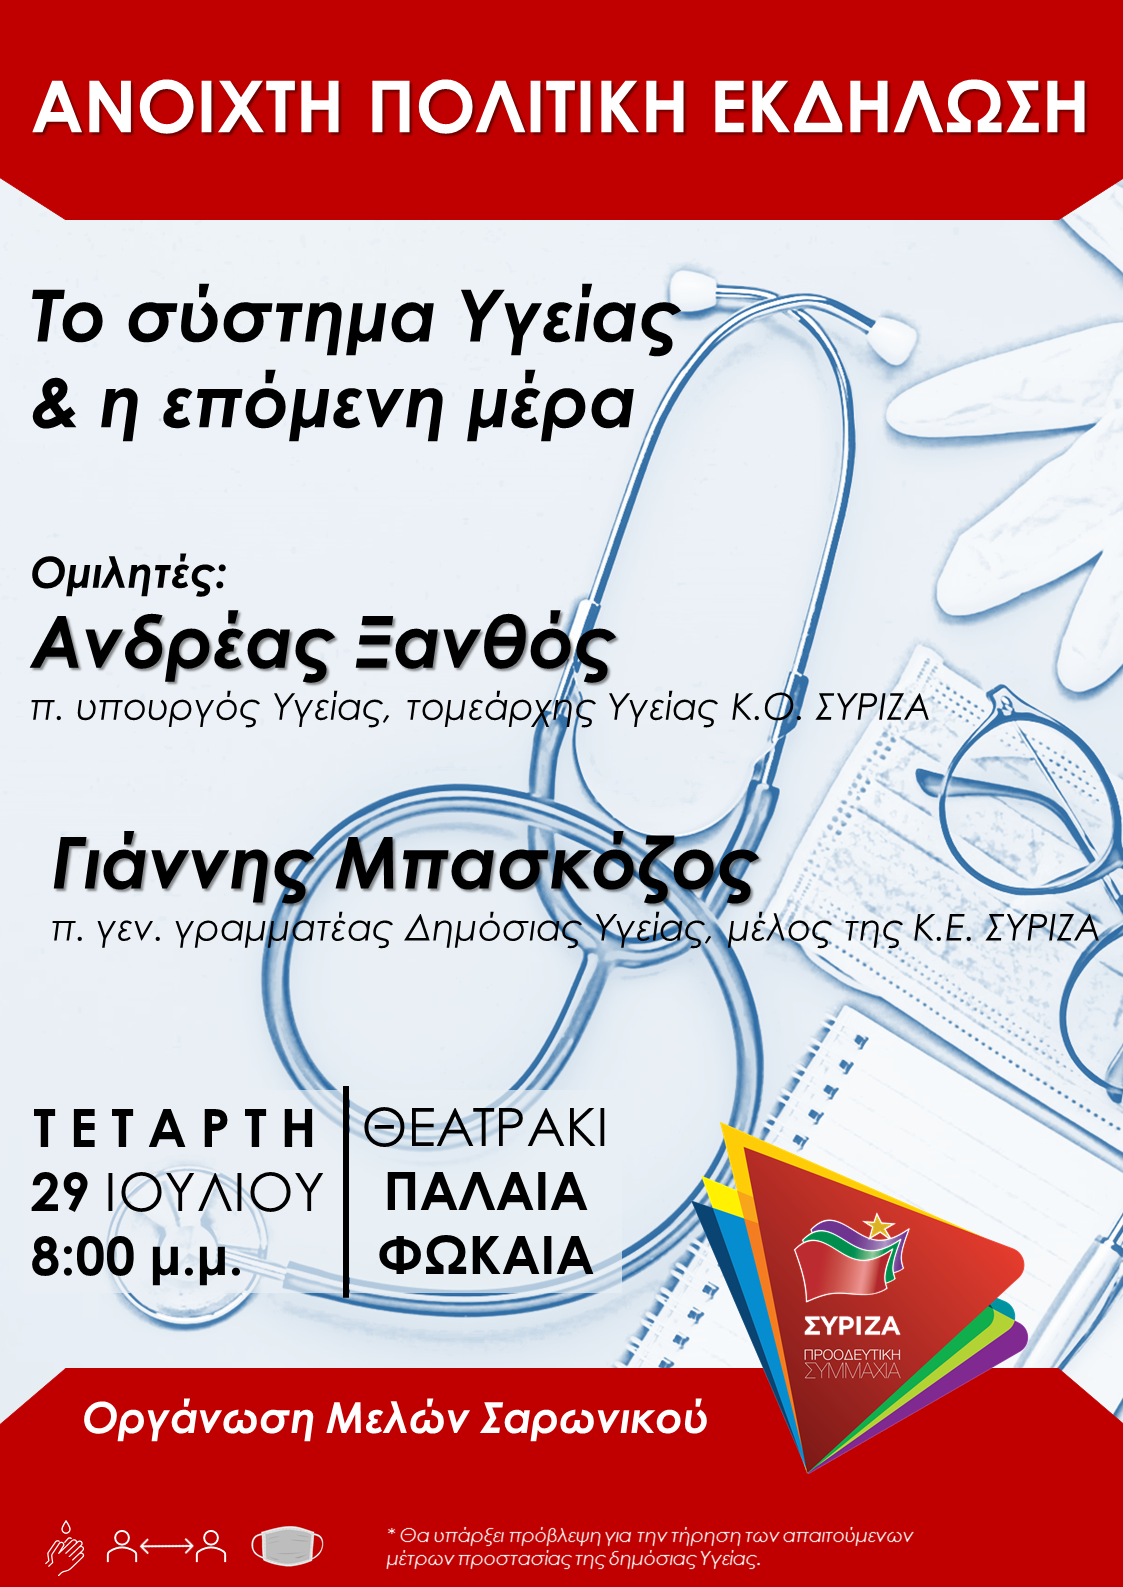 Πολιτική εκδήλωση του ΣΥΡΙΖΑ Σαρωνικού, με θέμα «Το σύστημα υγείας και η επόμενη μέρα»-Τετάρτη 29 Ιουλίου, στο θεατράκι της Παλαιάς Φώκαιας